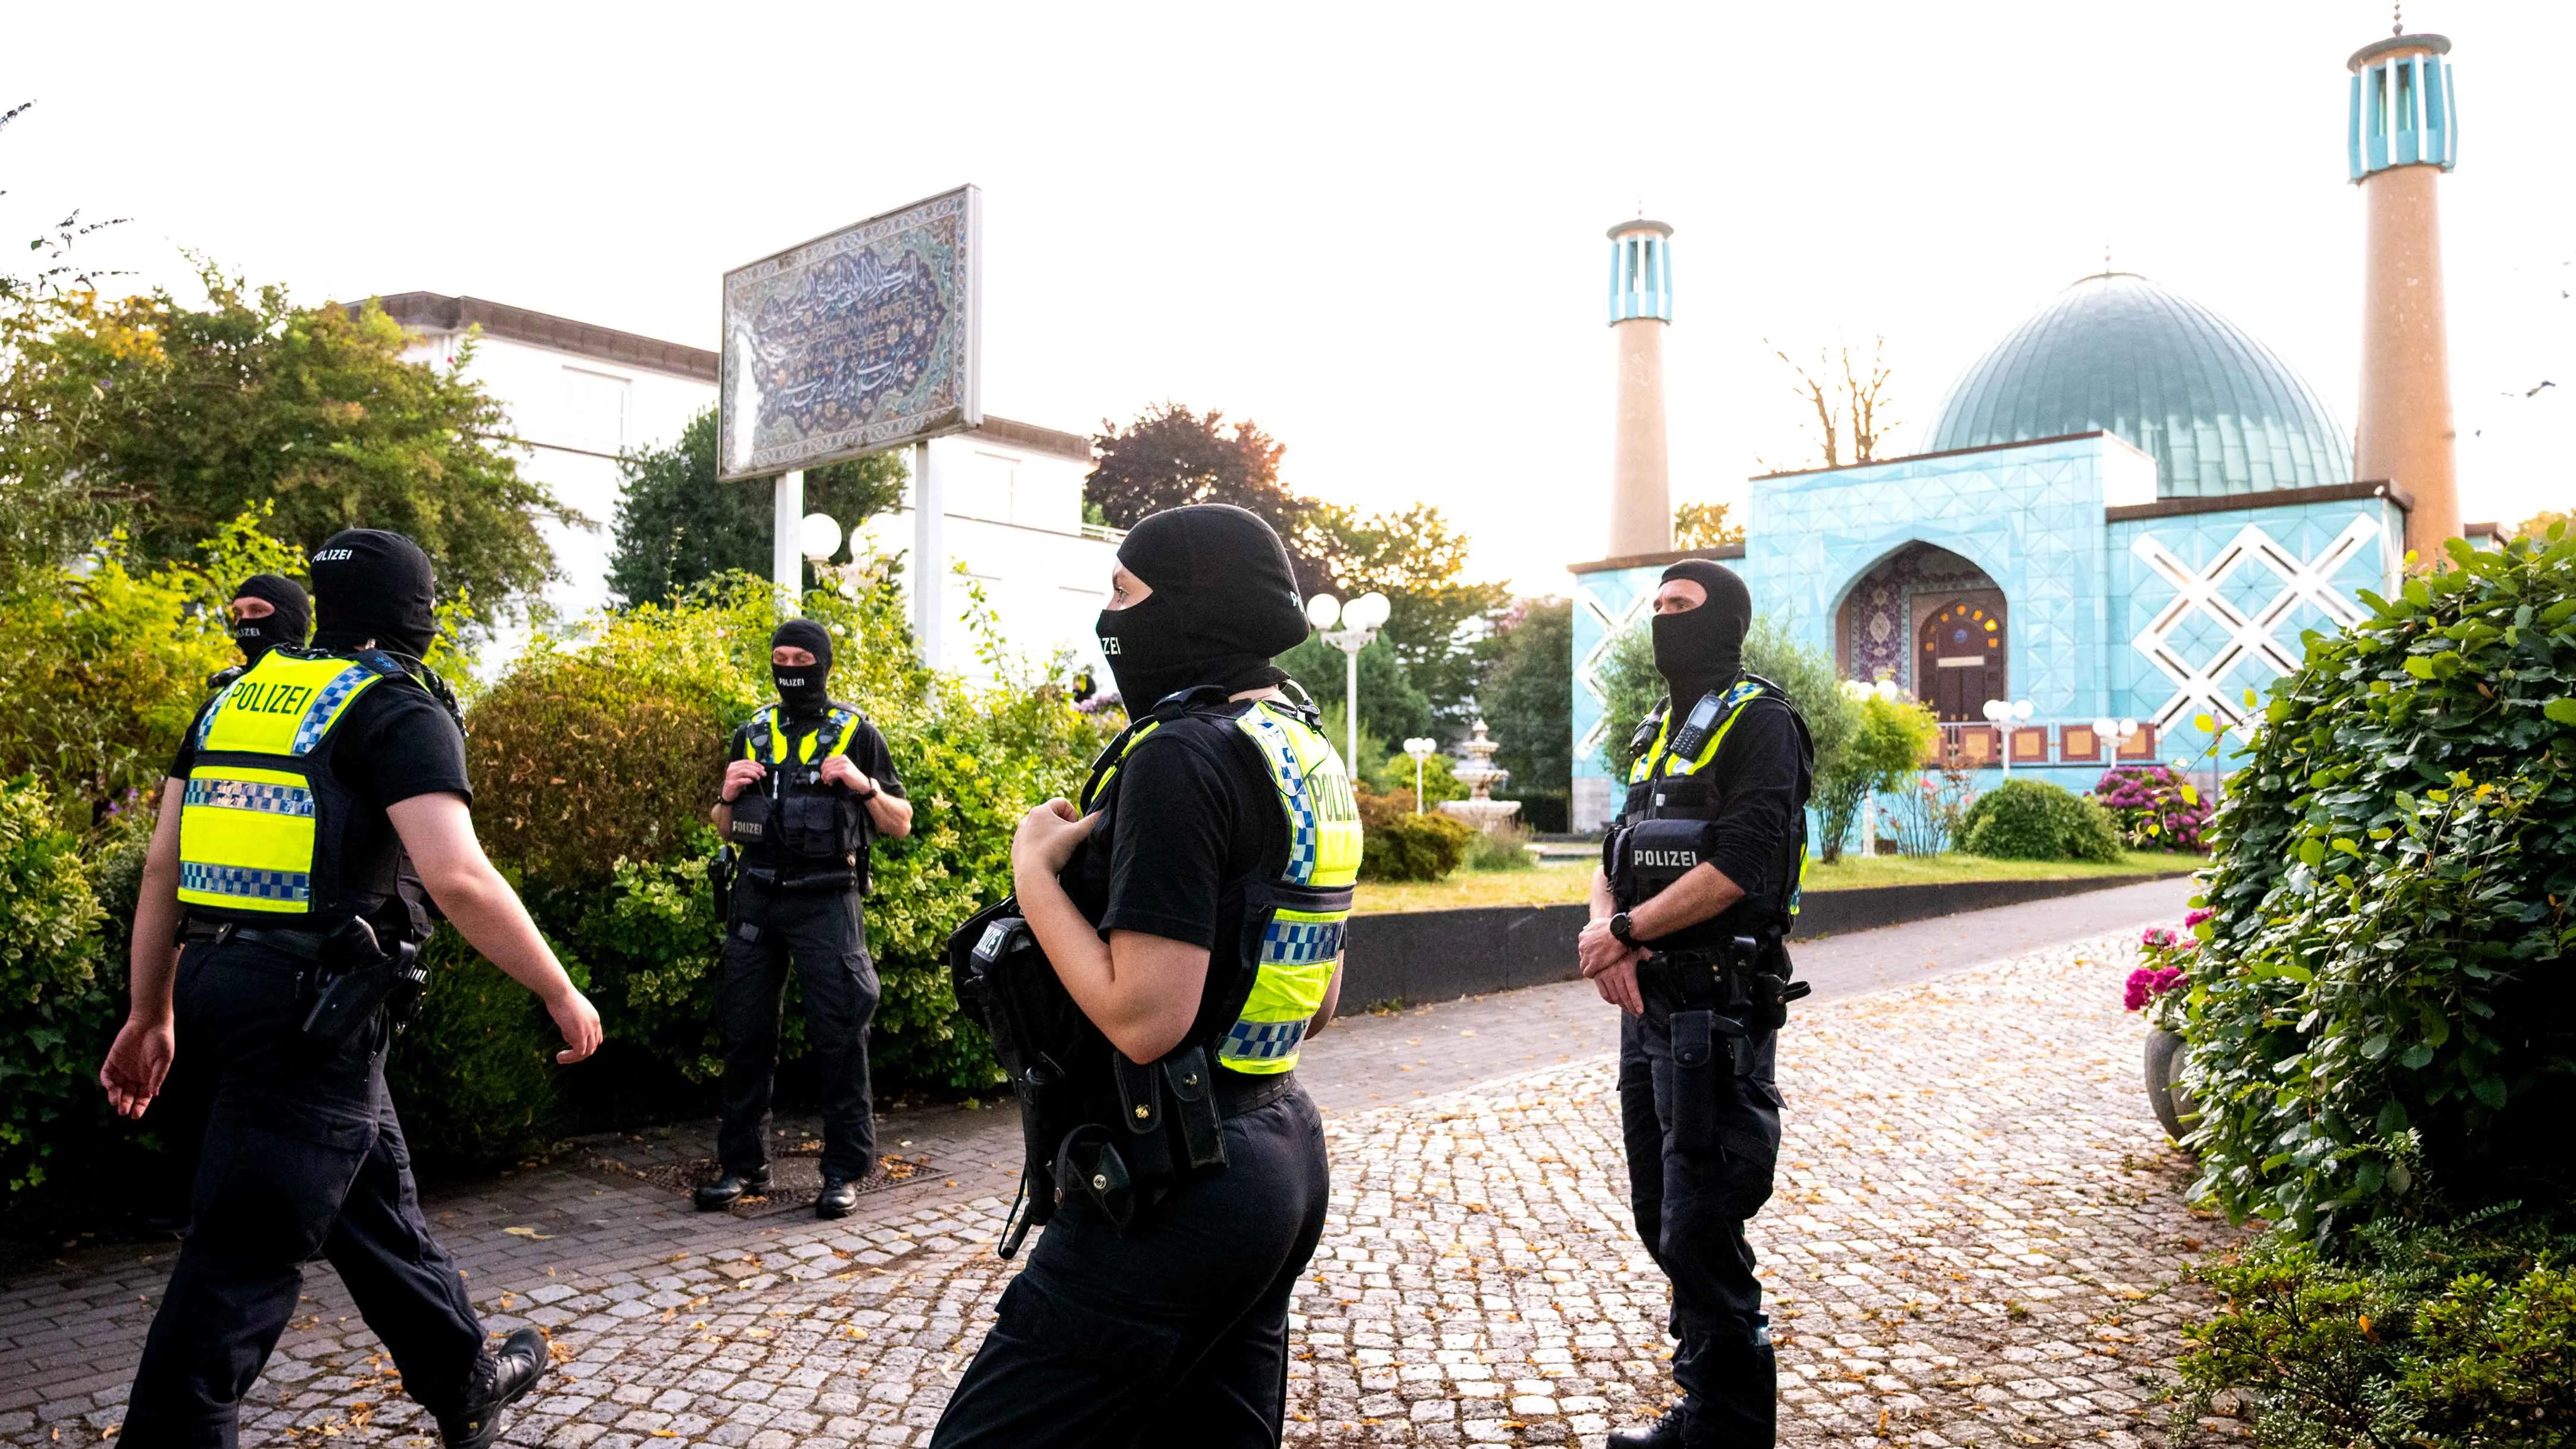 للاشتباه بدعمه "حزب الله".. ألمانيا تحظر "المركز الإسلامي في هامبورغ"